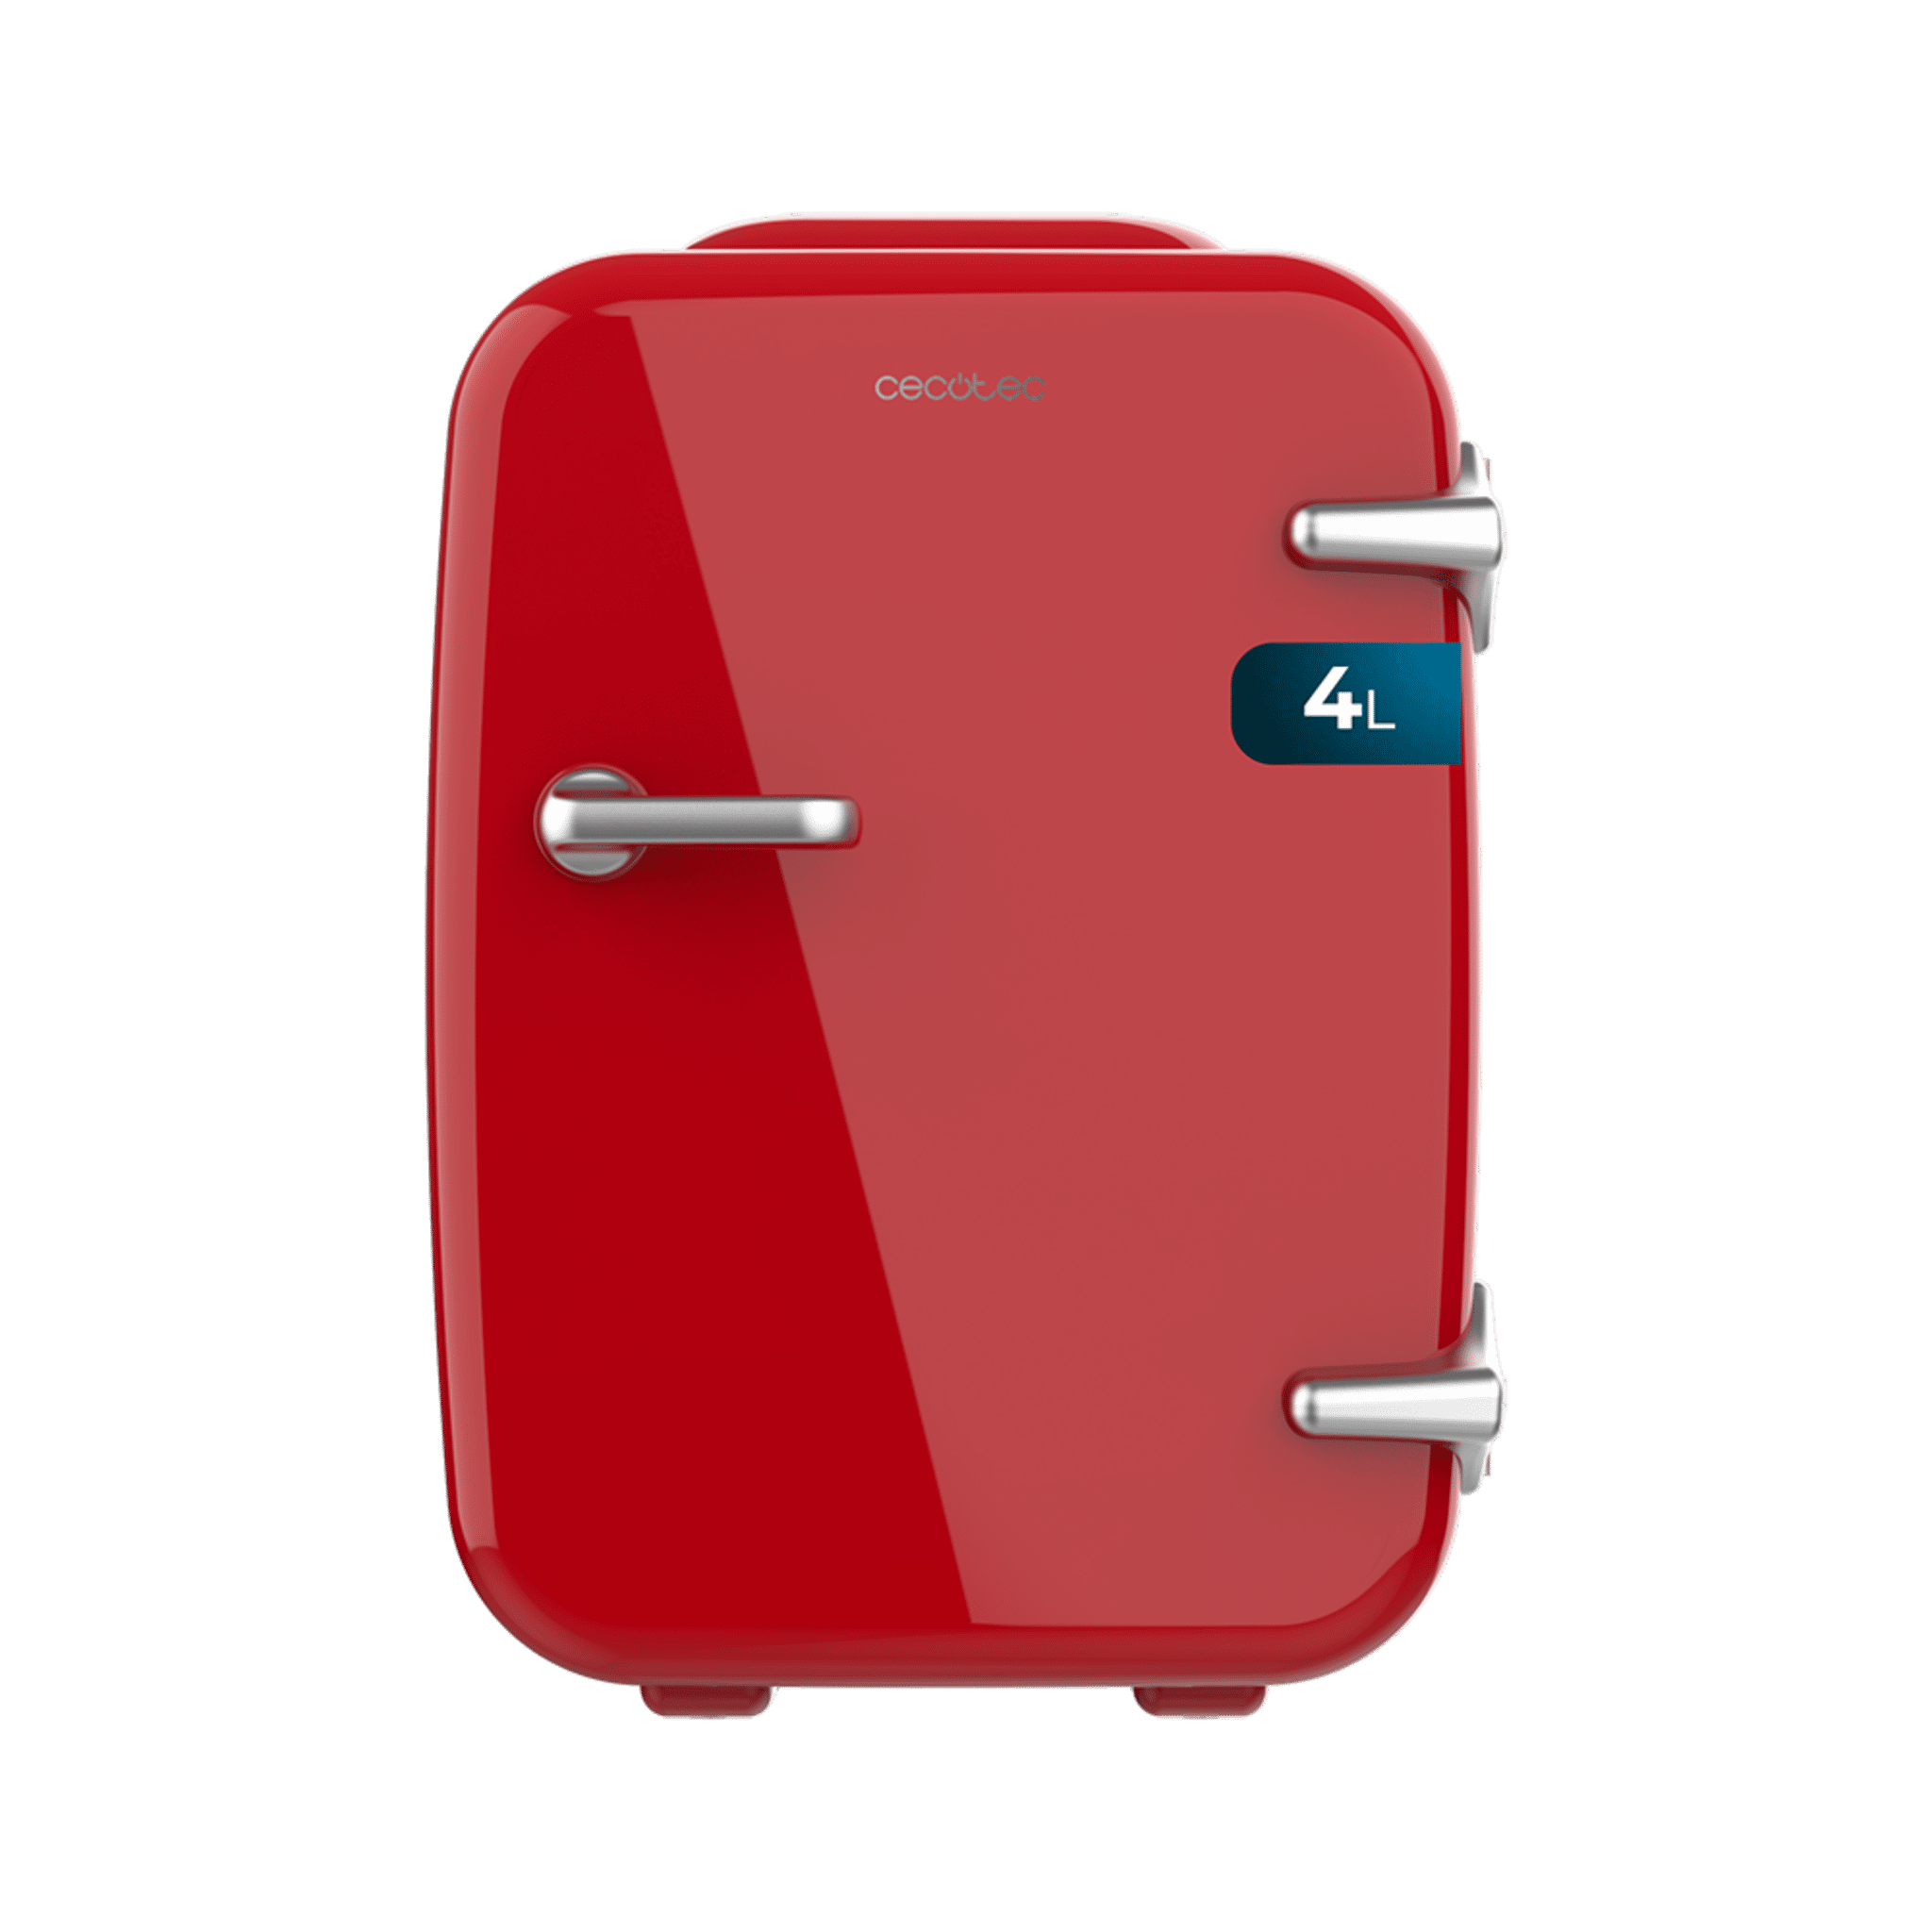 Réfrigérateur Bolero MiniCooling 4L Rouge Havane avec fonctionnement 12V-220V, compatible avec les voitures et caravanes, fonction de refroidissement et de chauffage, plage de température 7-65º, transport facile.